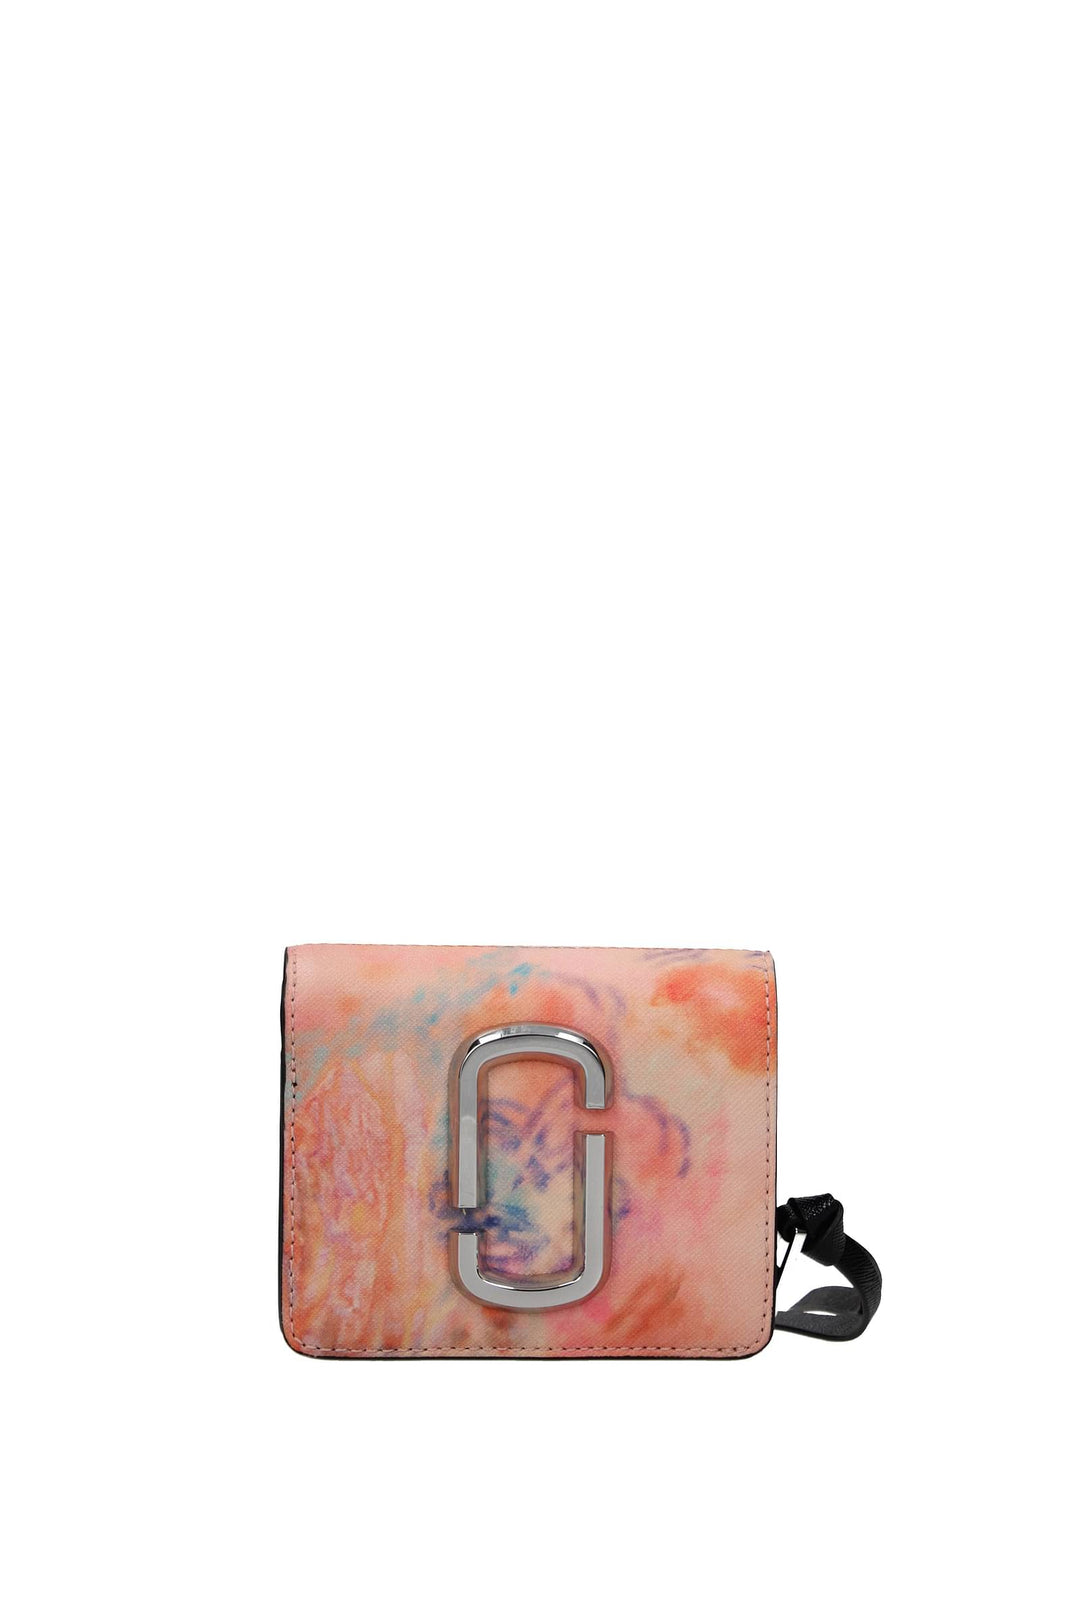 Portafogli Tessuto Multicolor - Marc Jacobs - Donna